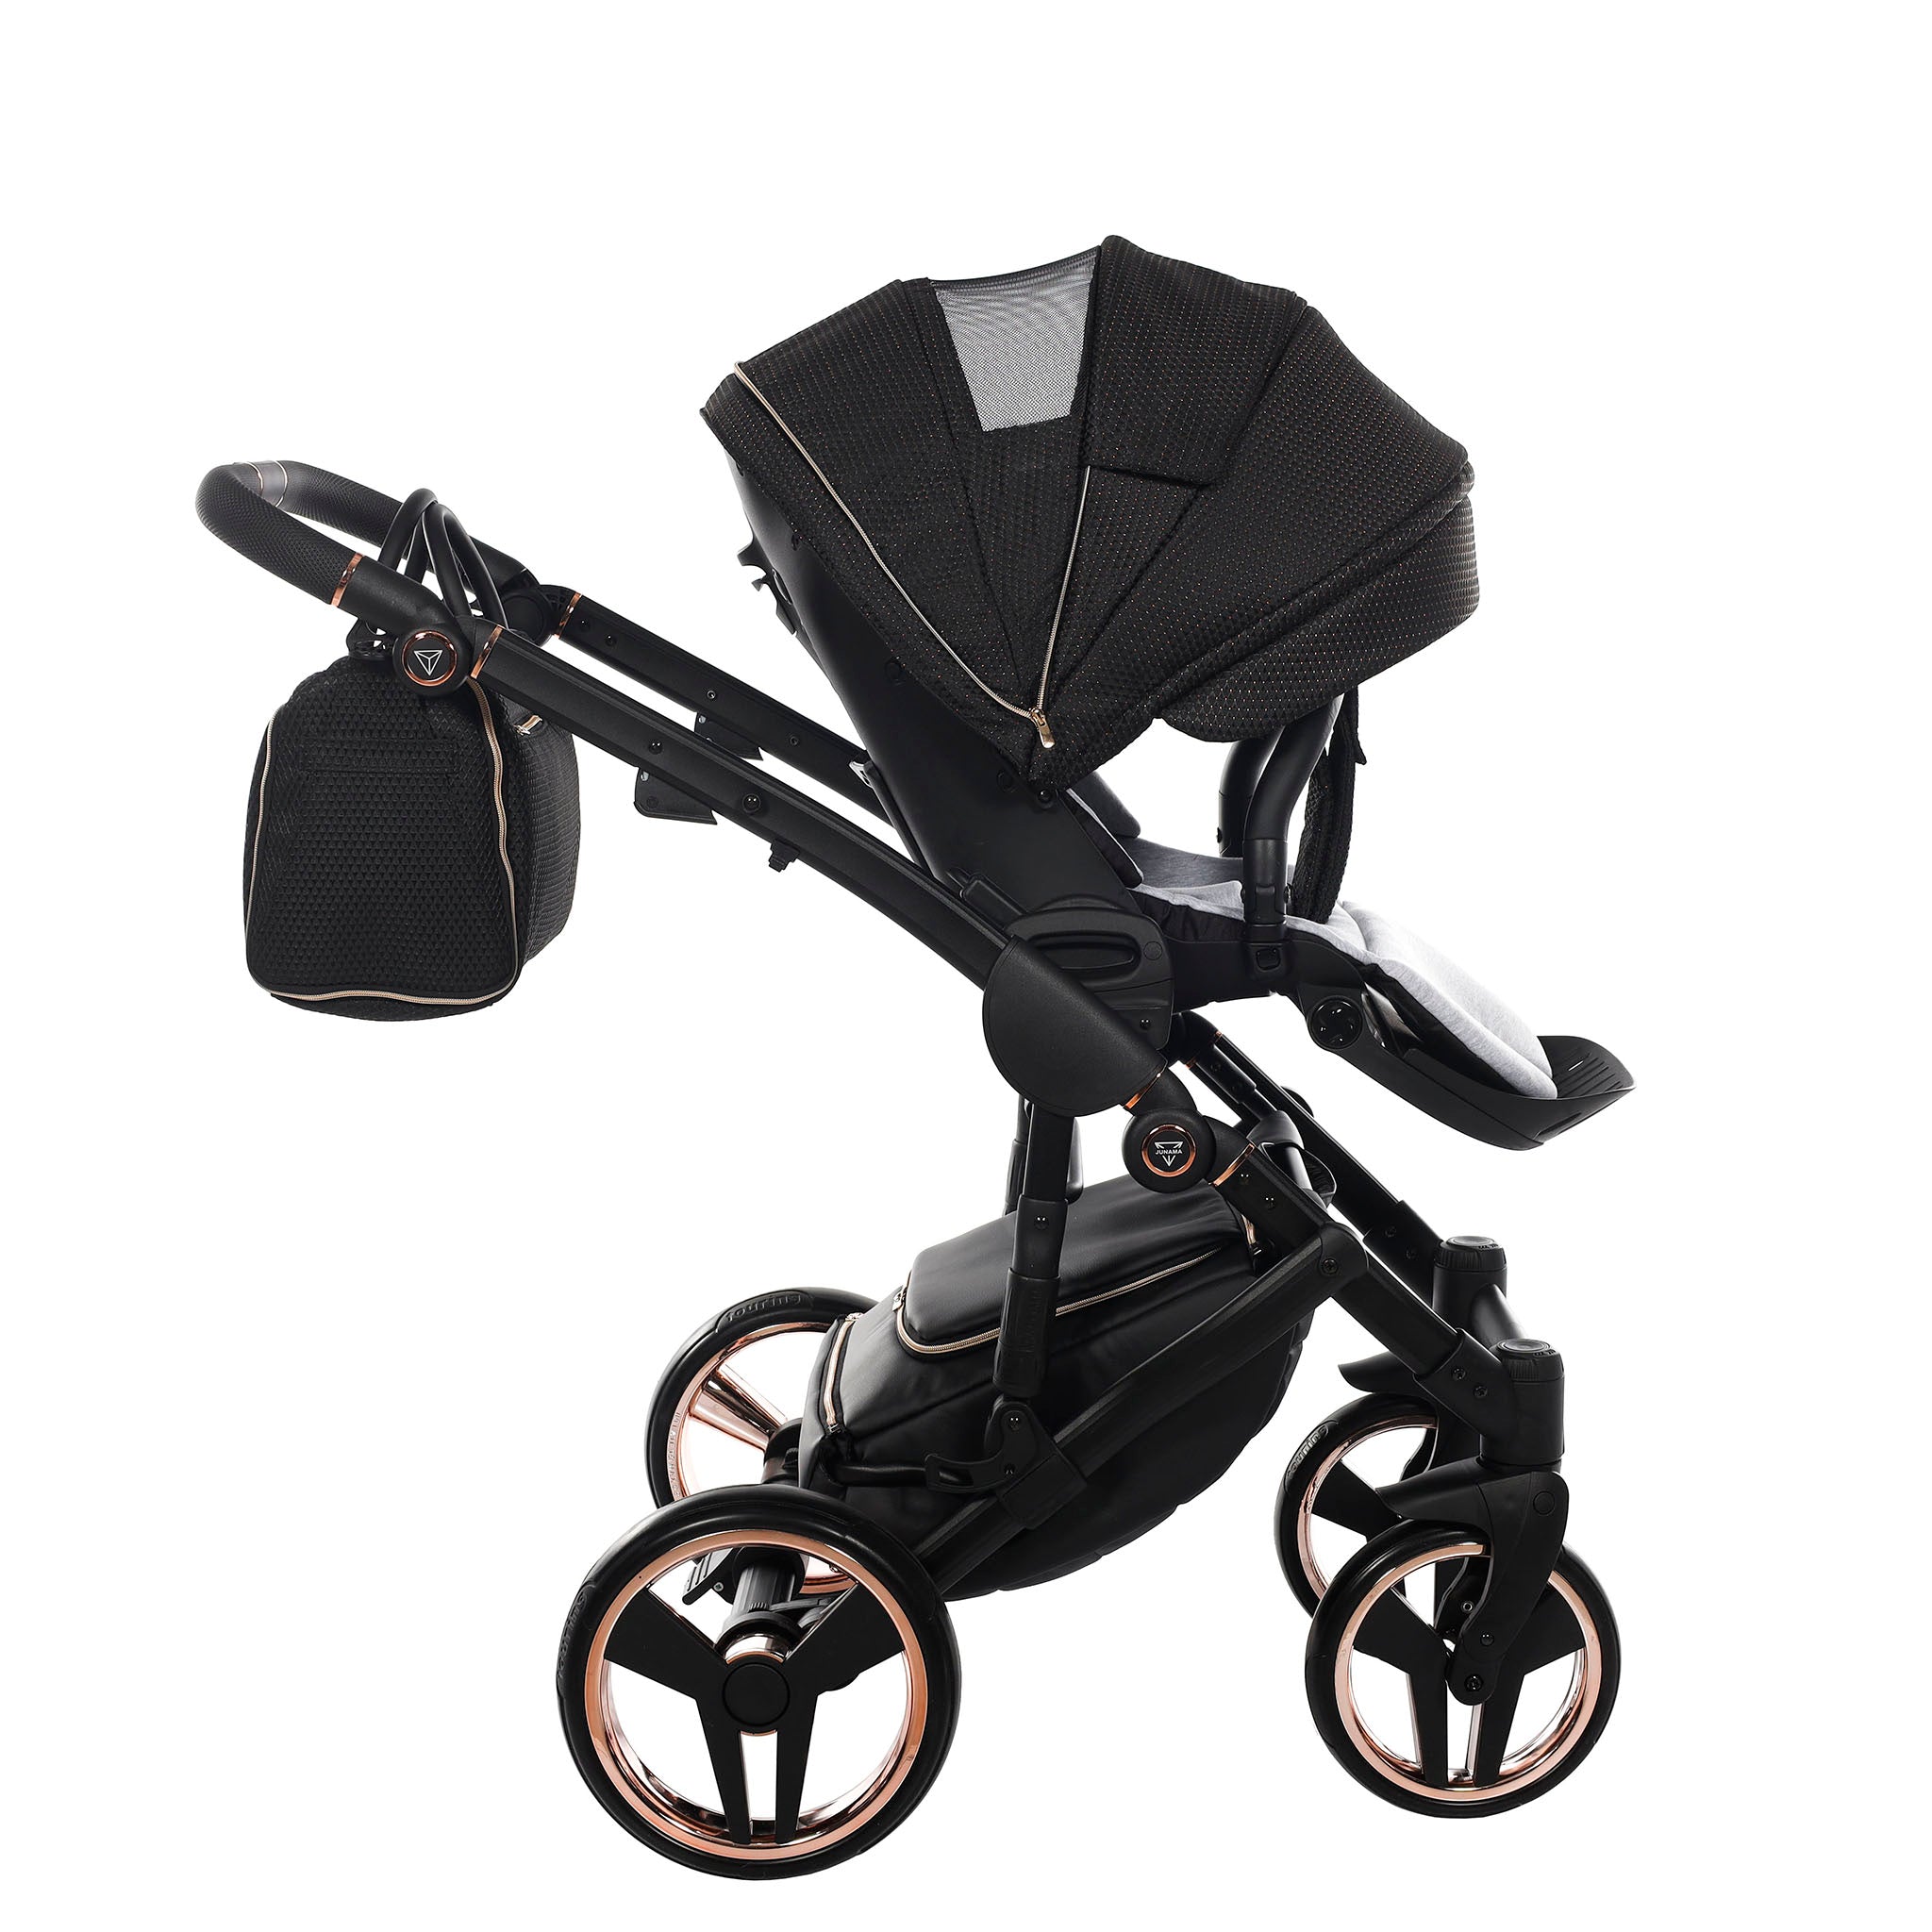 Junama Mirror Satin, baby prams or stroller 2 in 1 - Rosegold and Black, Code number: JUNMSAT02